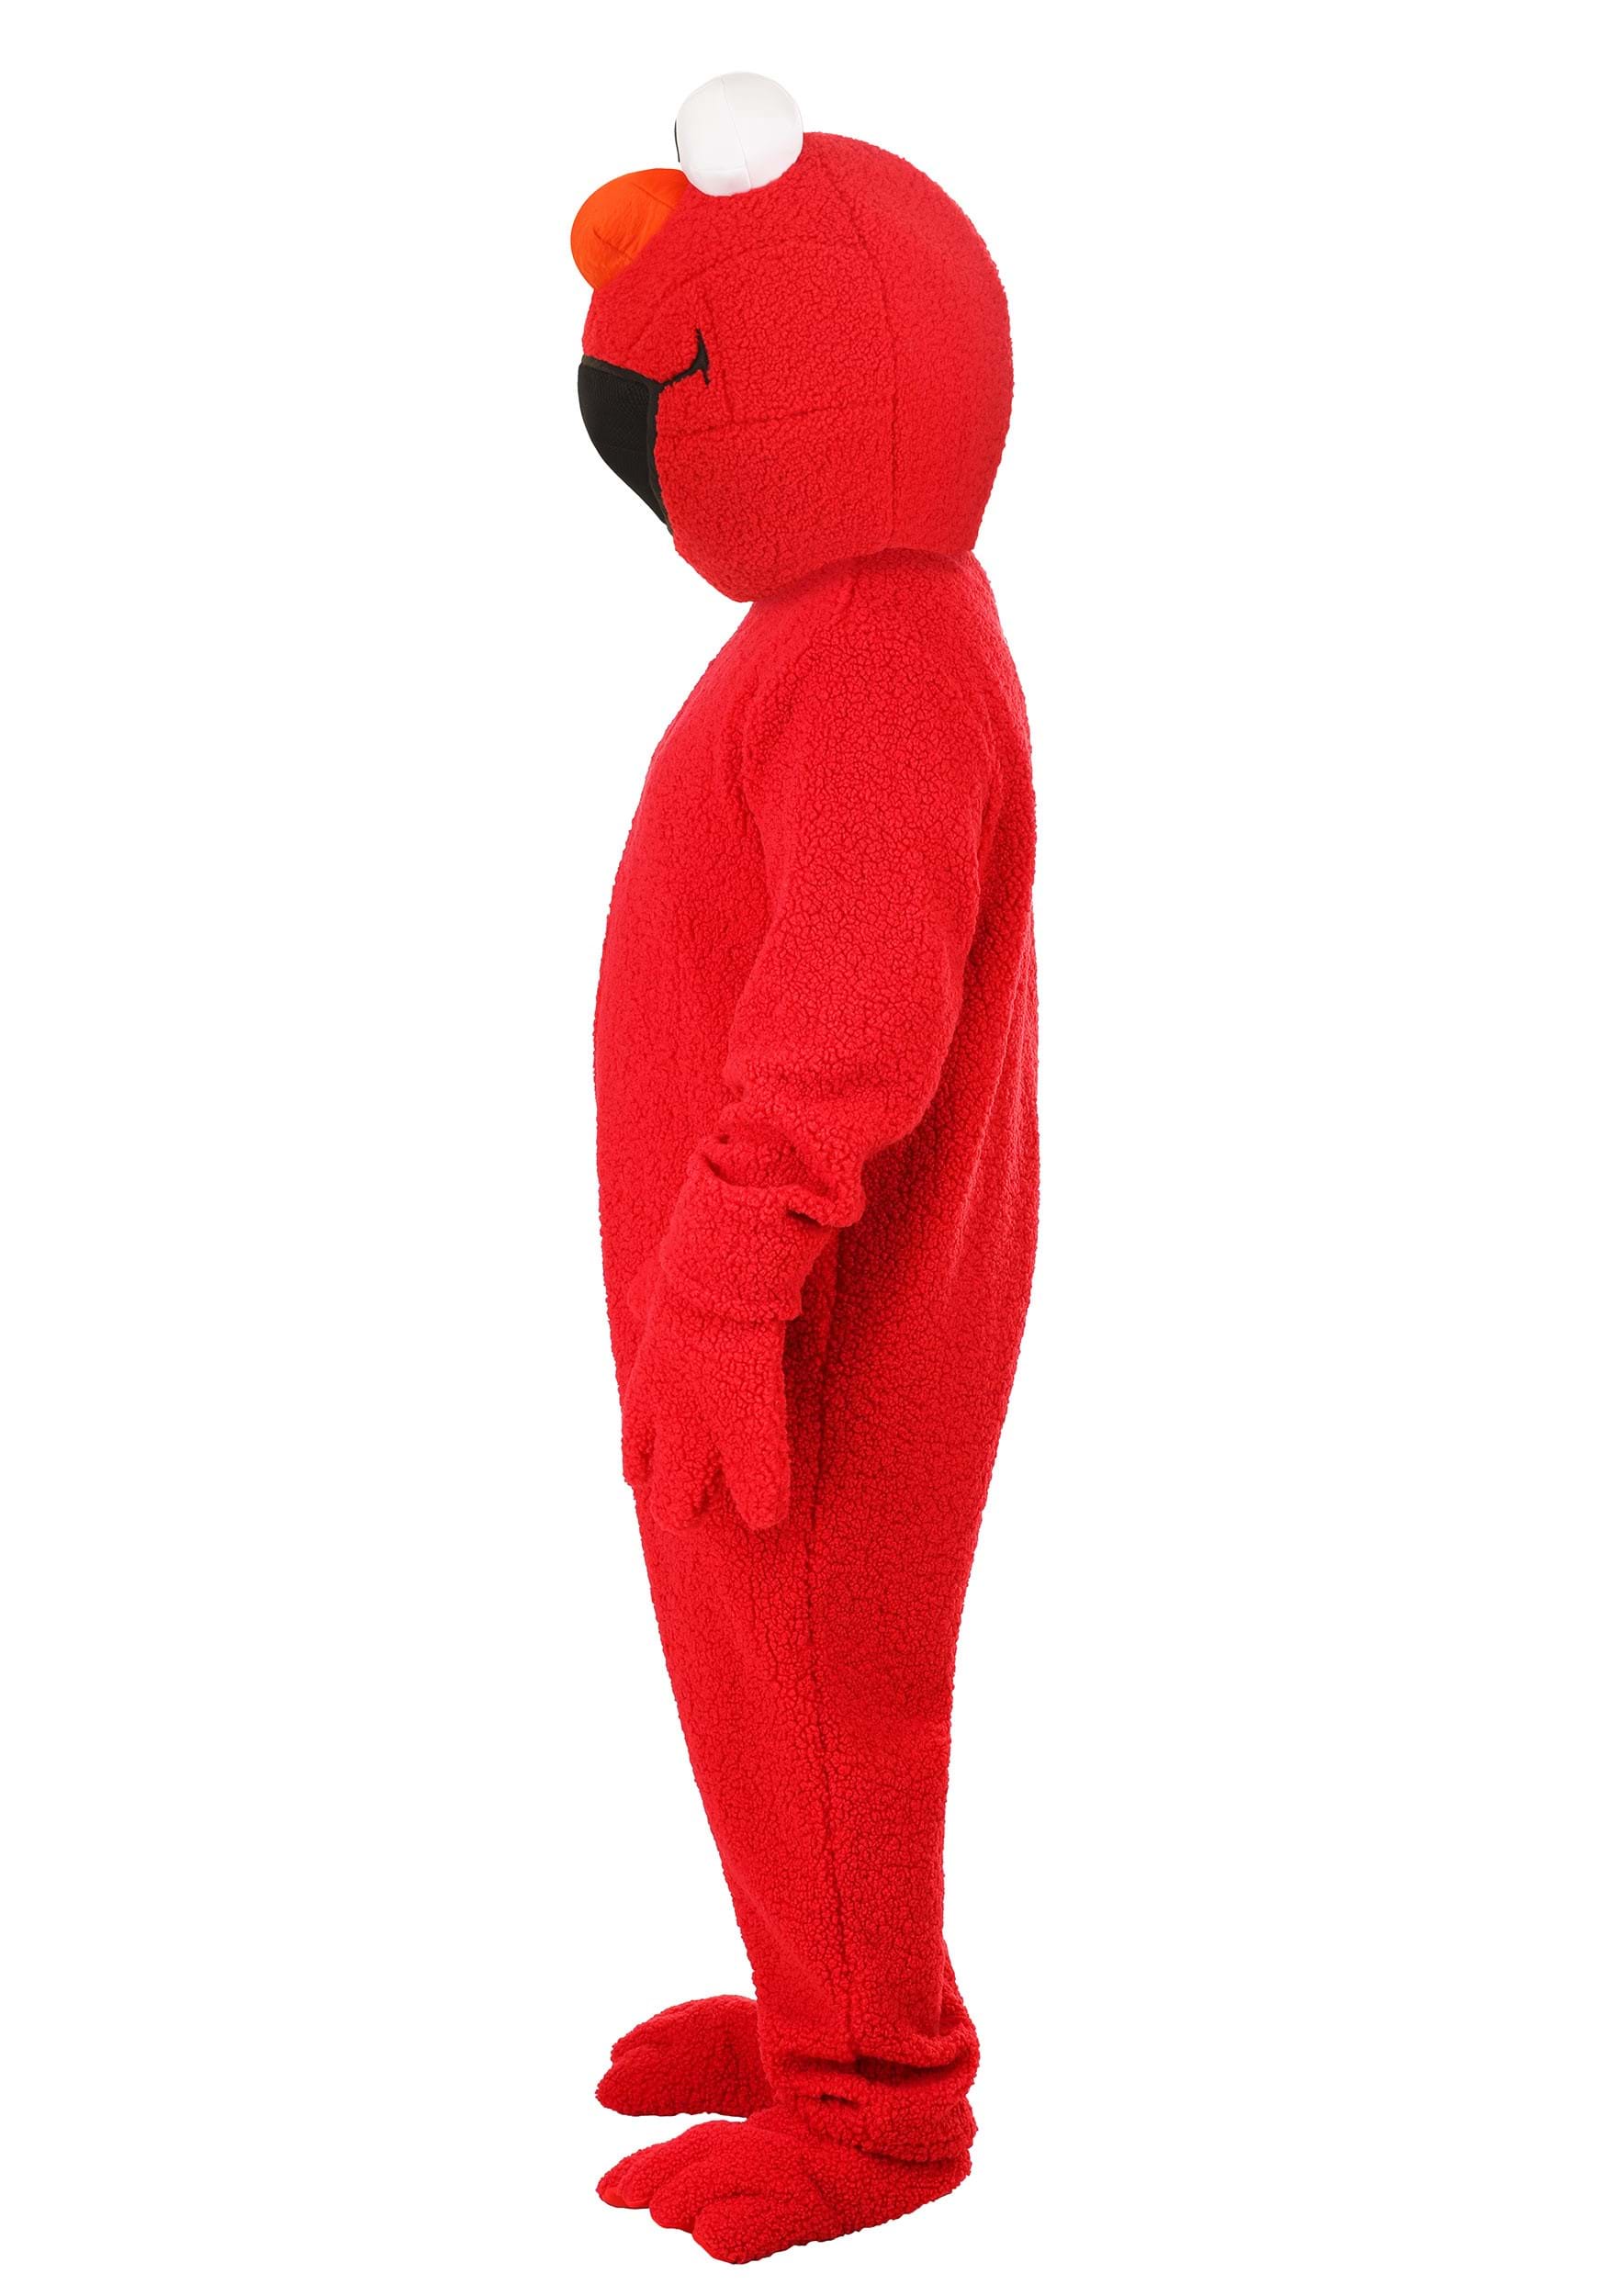 forråde Kollisionskursus Decrement Elmo Plus Size Adult Mascot Costume